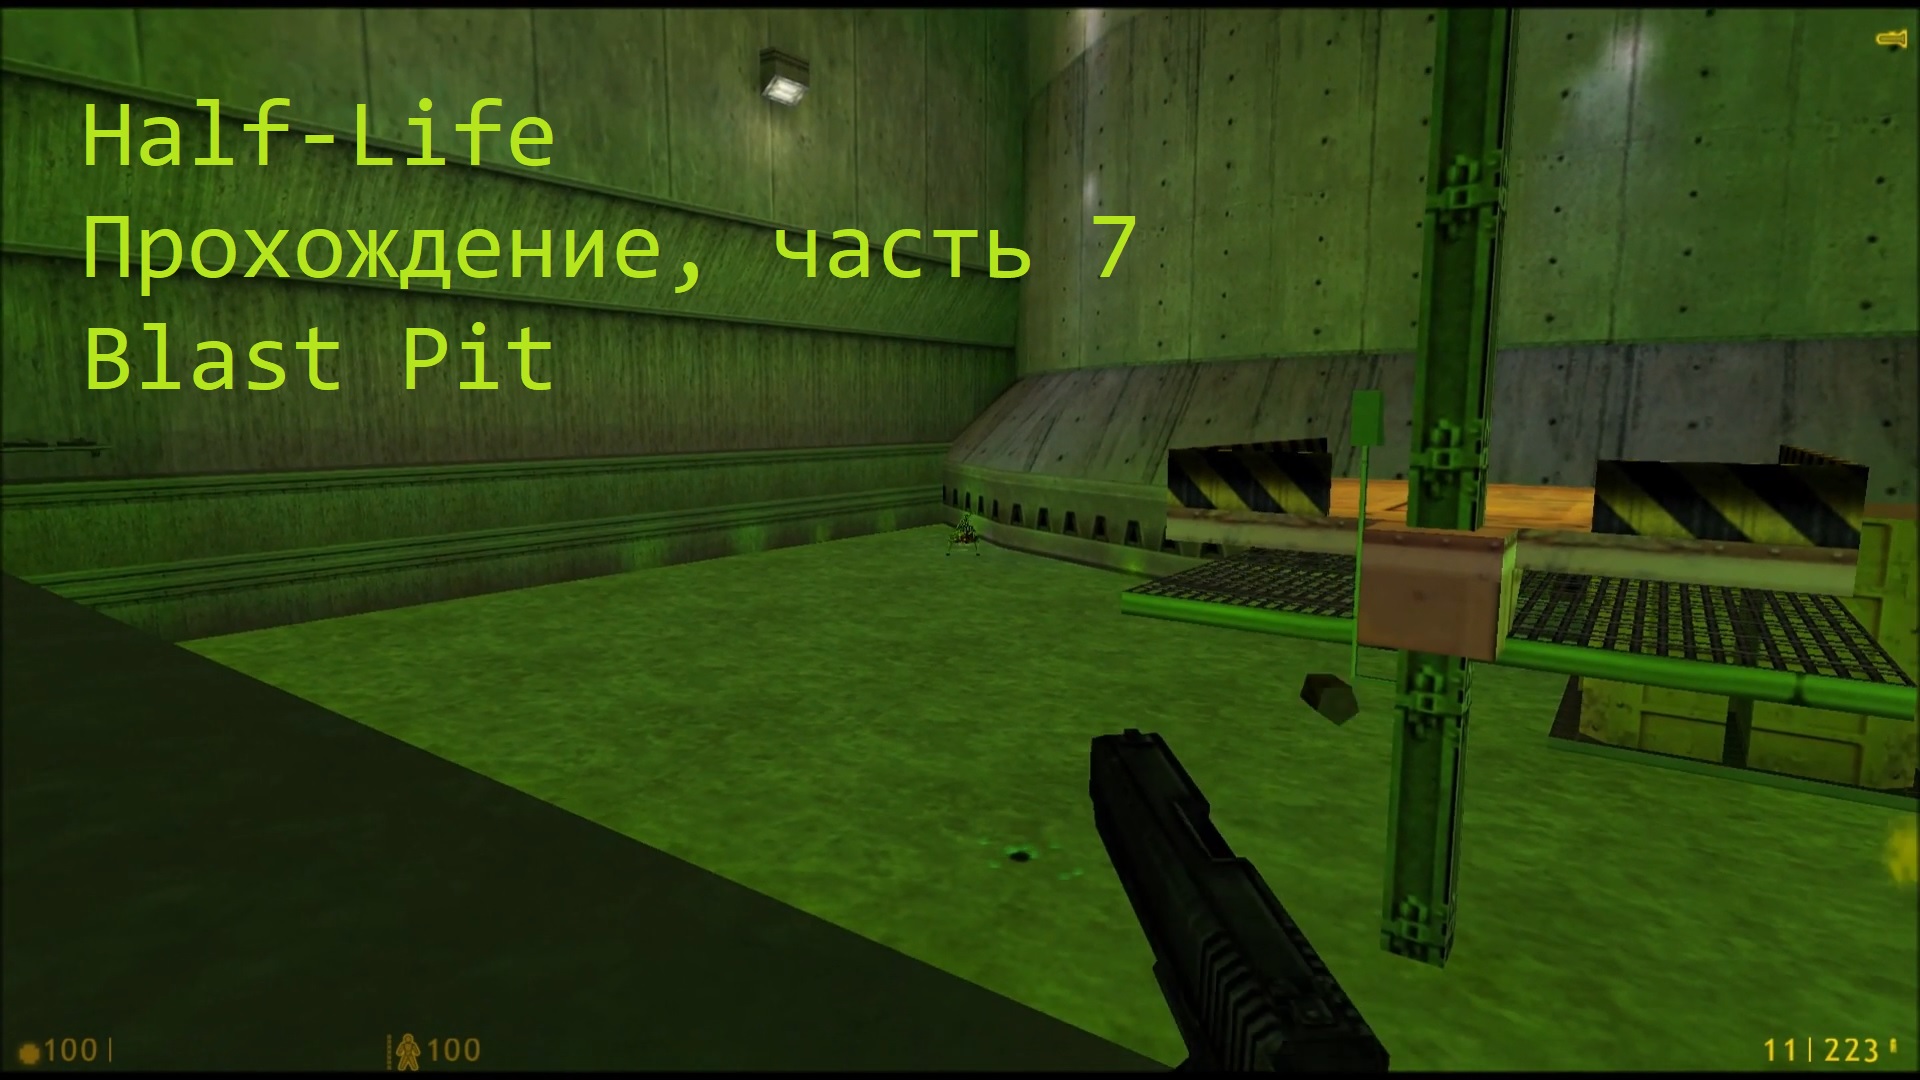 Half-Life, Прохождение, часть 7 - Blast Pit